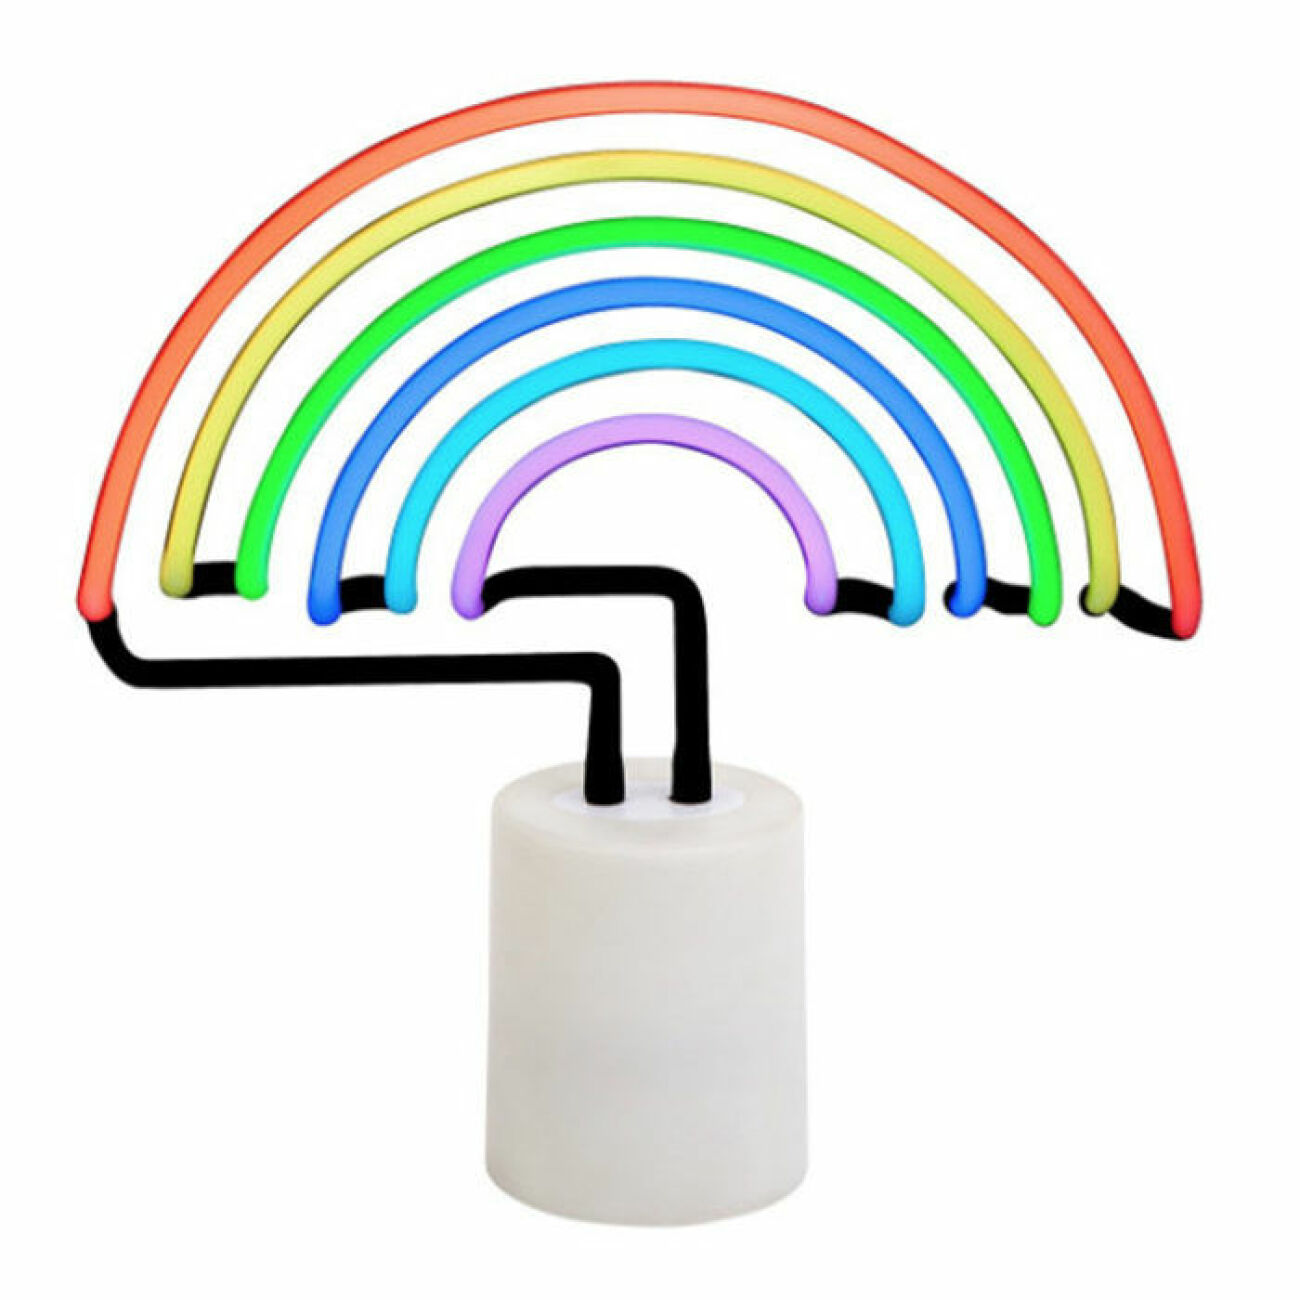 Neonlampa i form av en regnbåge